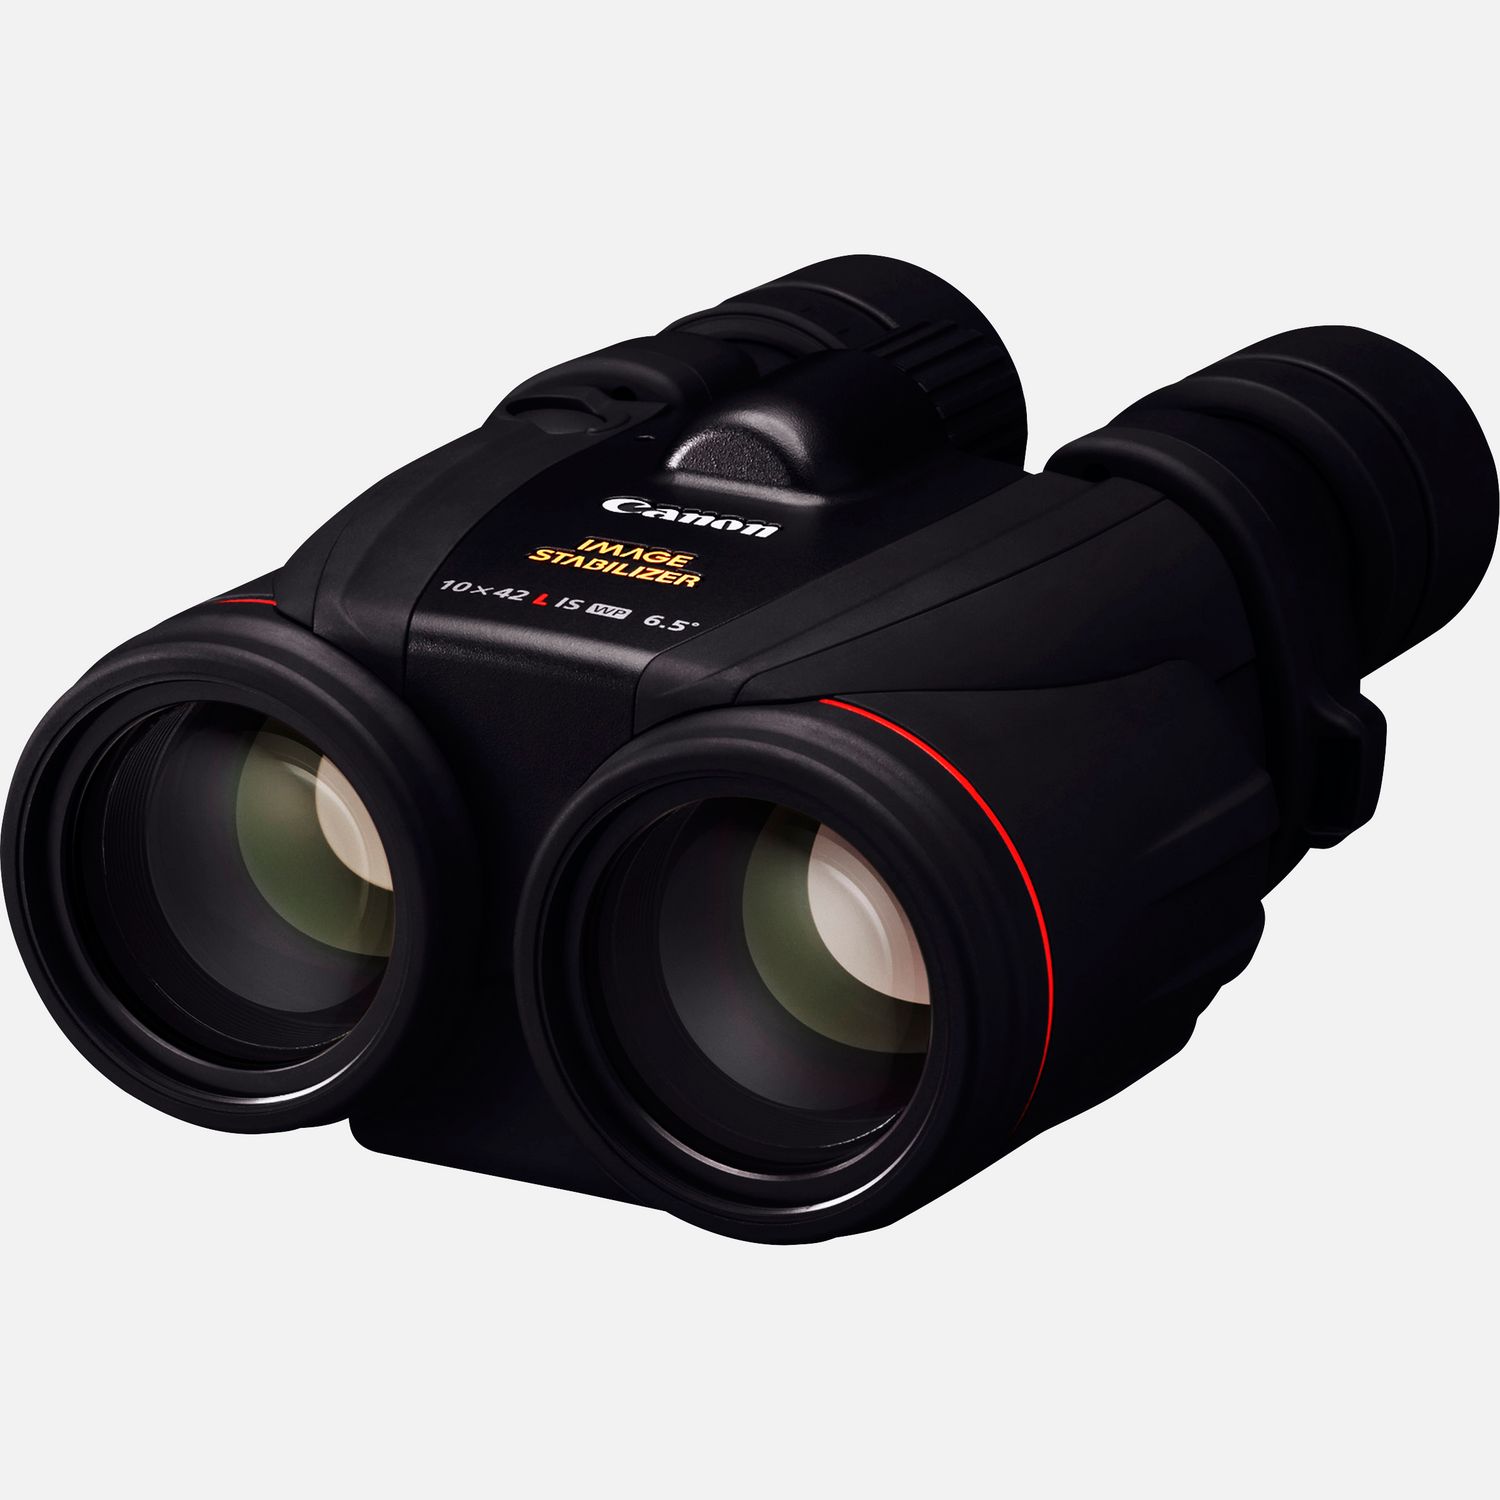 Image of Binocoli portatili Canon 10x42L IS dotati di luminose ottiche serie L, impermeabili, resistenti a qualsiasi condizione atmosferica